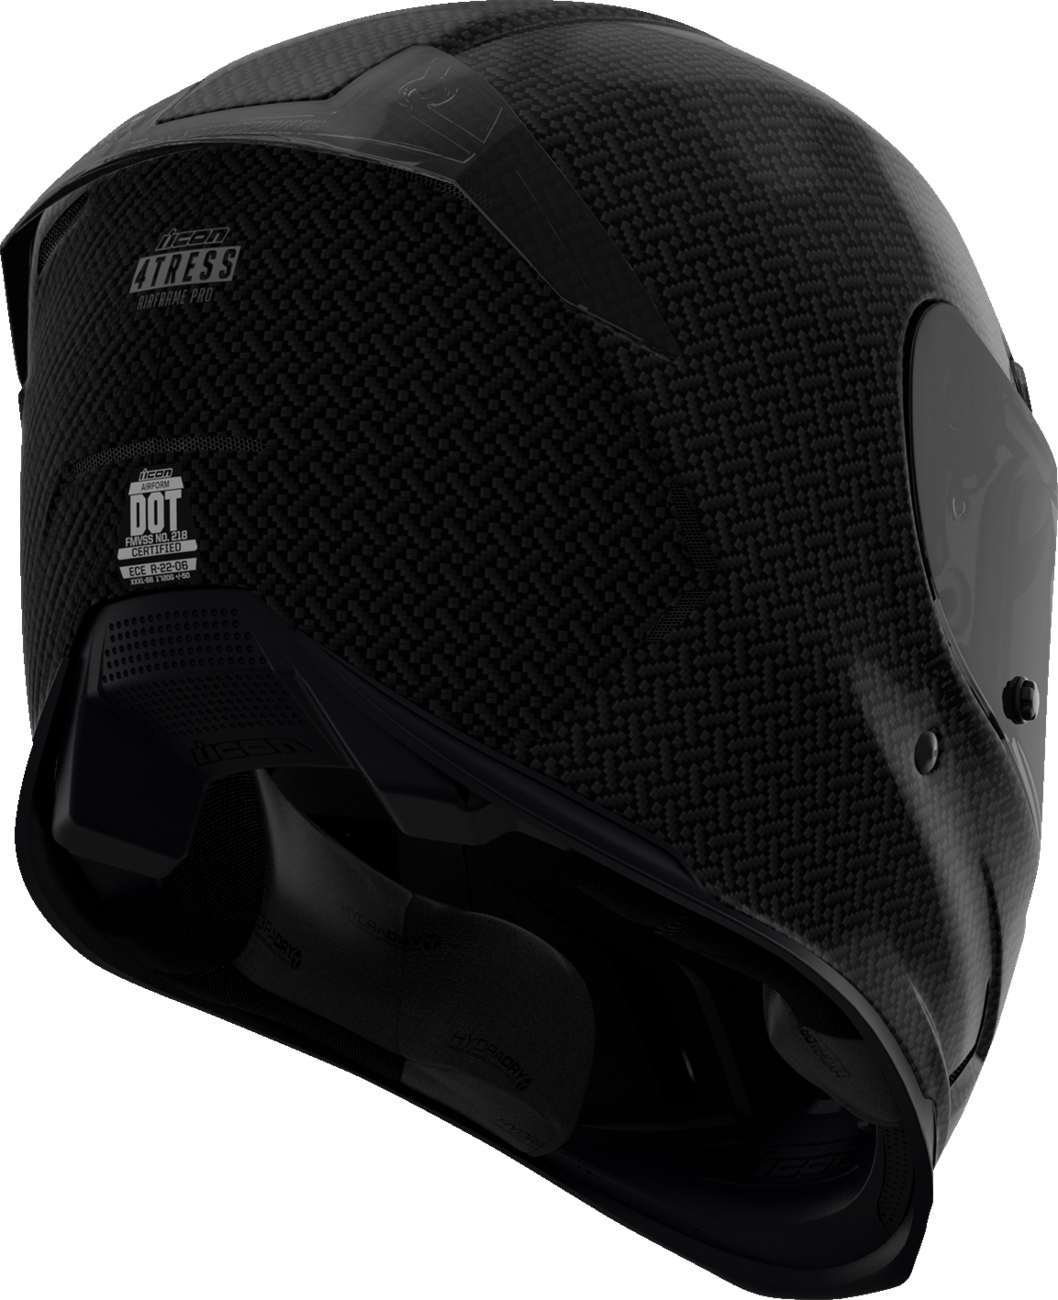 ICON Airframe Pro™ Helmet - Carbon 4Tress - Black - XS 0101-16652